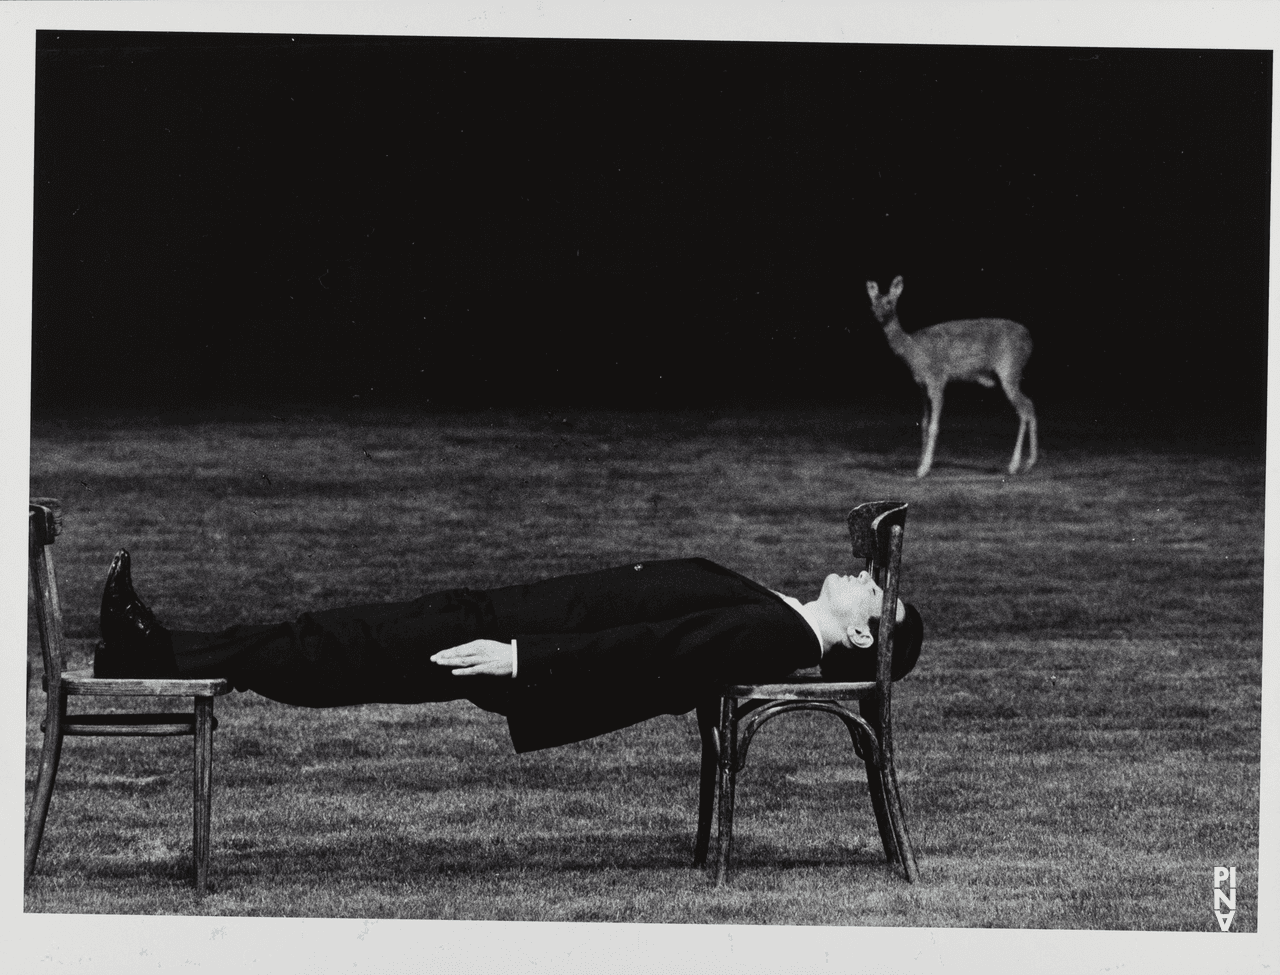 Antonio Carallo in „1980 – Ein Stück von Pina Bausch“ von Pina Bausch